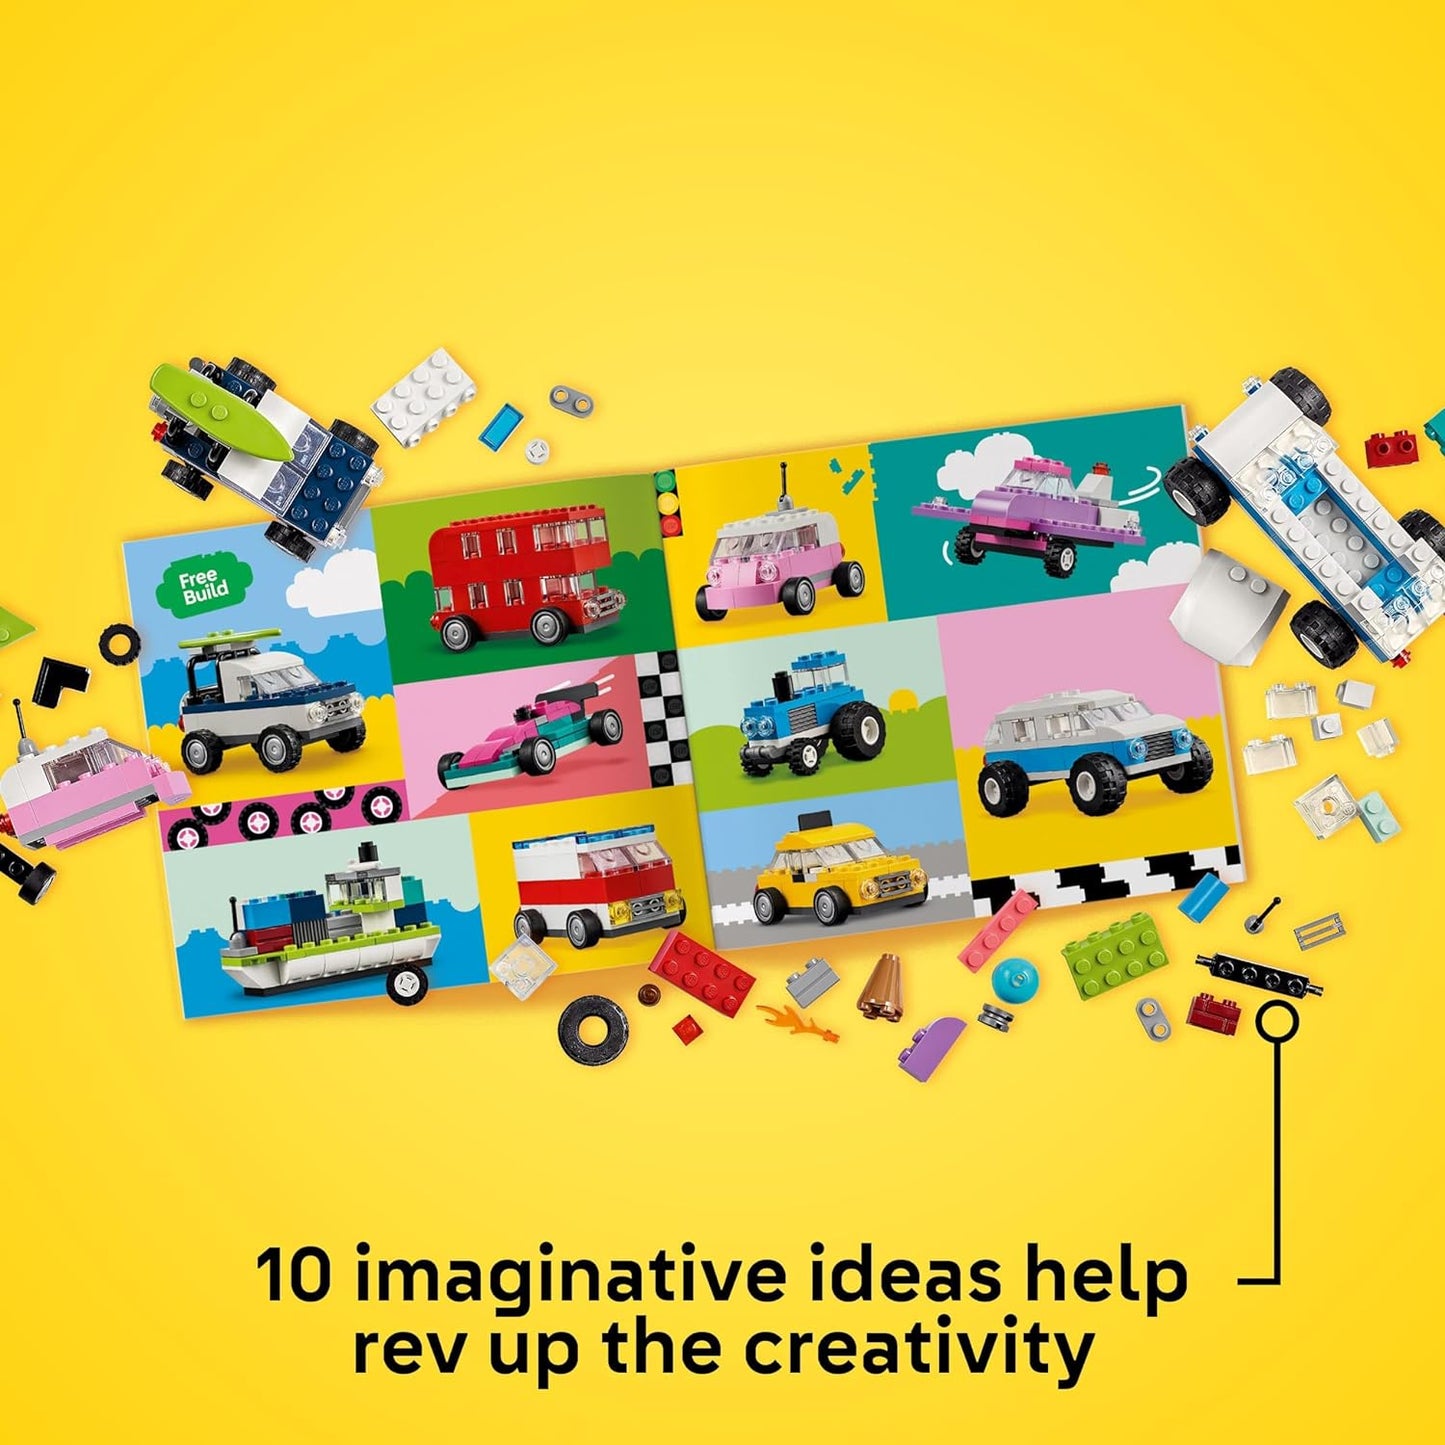 LEGO Veículos criativos clássicos, kit de carros modelo coloridos com um brinquedo de carro de polícia, caminhão de sorvete, limusine, van e muito mais, brinquedos de construção de tijolos para crianças, meninos e meninas de 5 anos